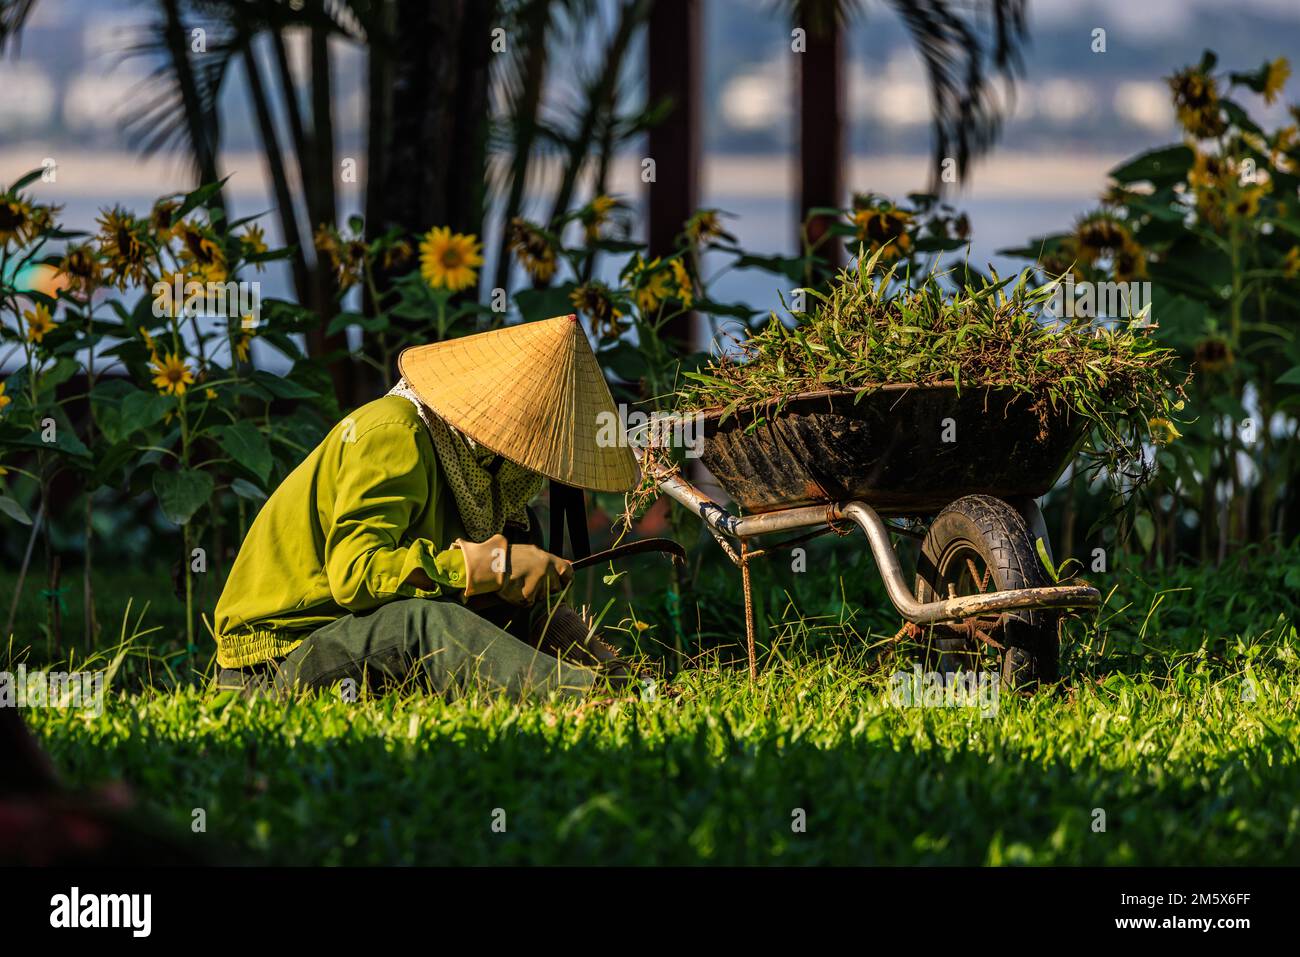 le jardinier vietnamien en chapeau conique traditionnel se trouve sur la pelouse avec un couteau incurvé dans une brouette sur fond de tournesols Banque D'Images